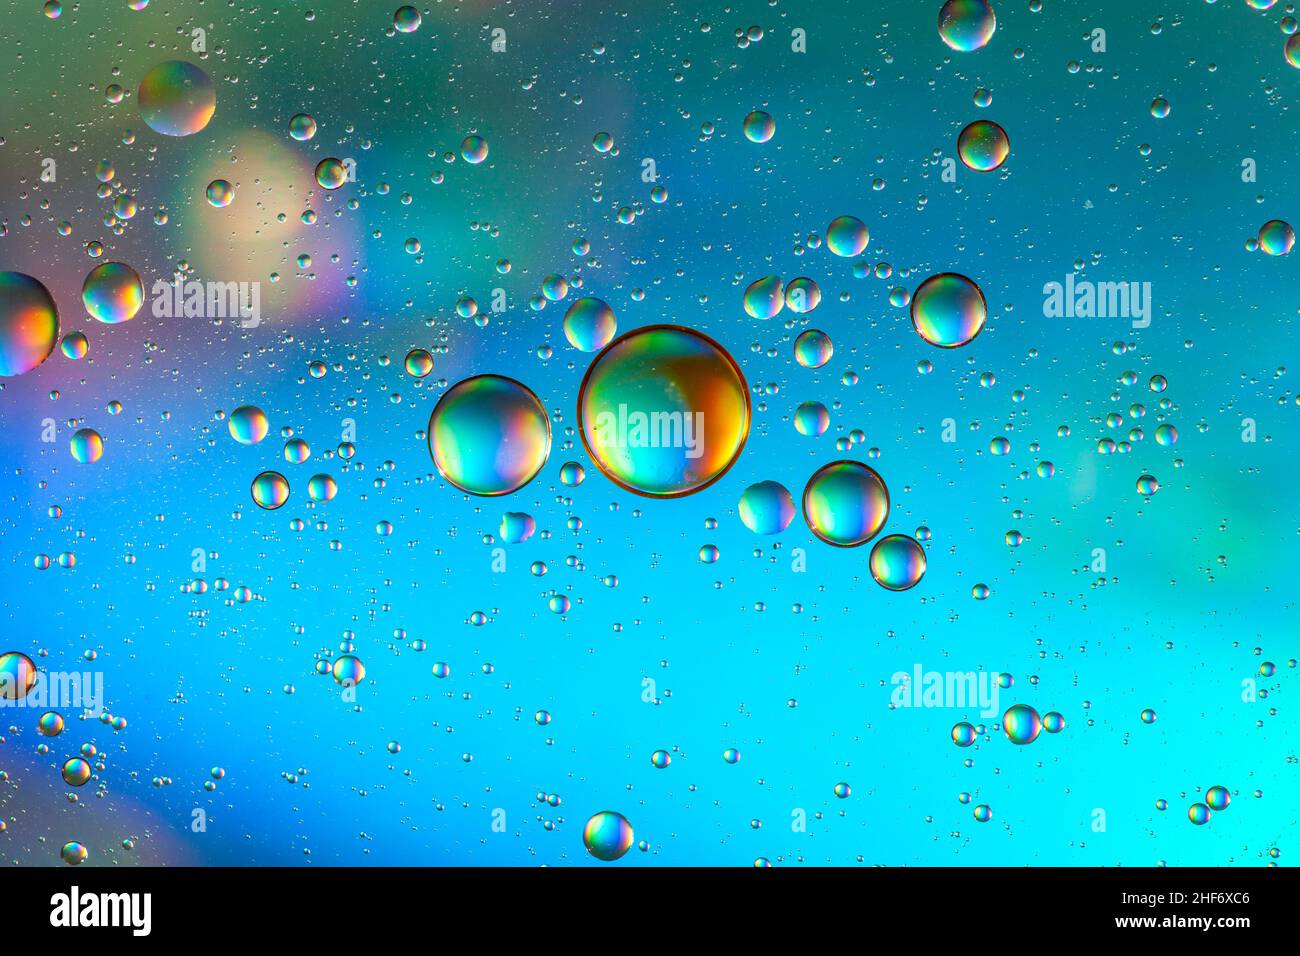 Bolle d'olio sulla superficie dell'acqua, sfondo multicolore, immagine astratta Foto Stock